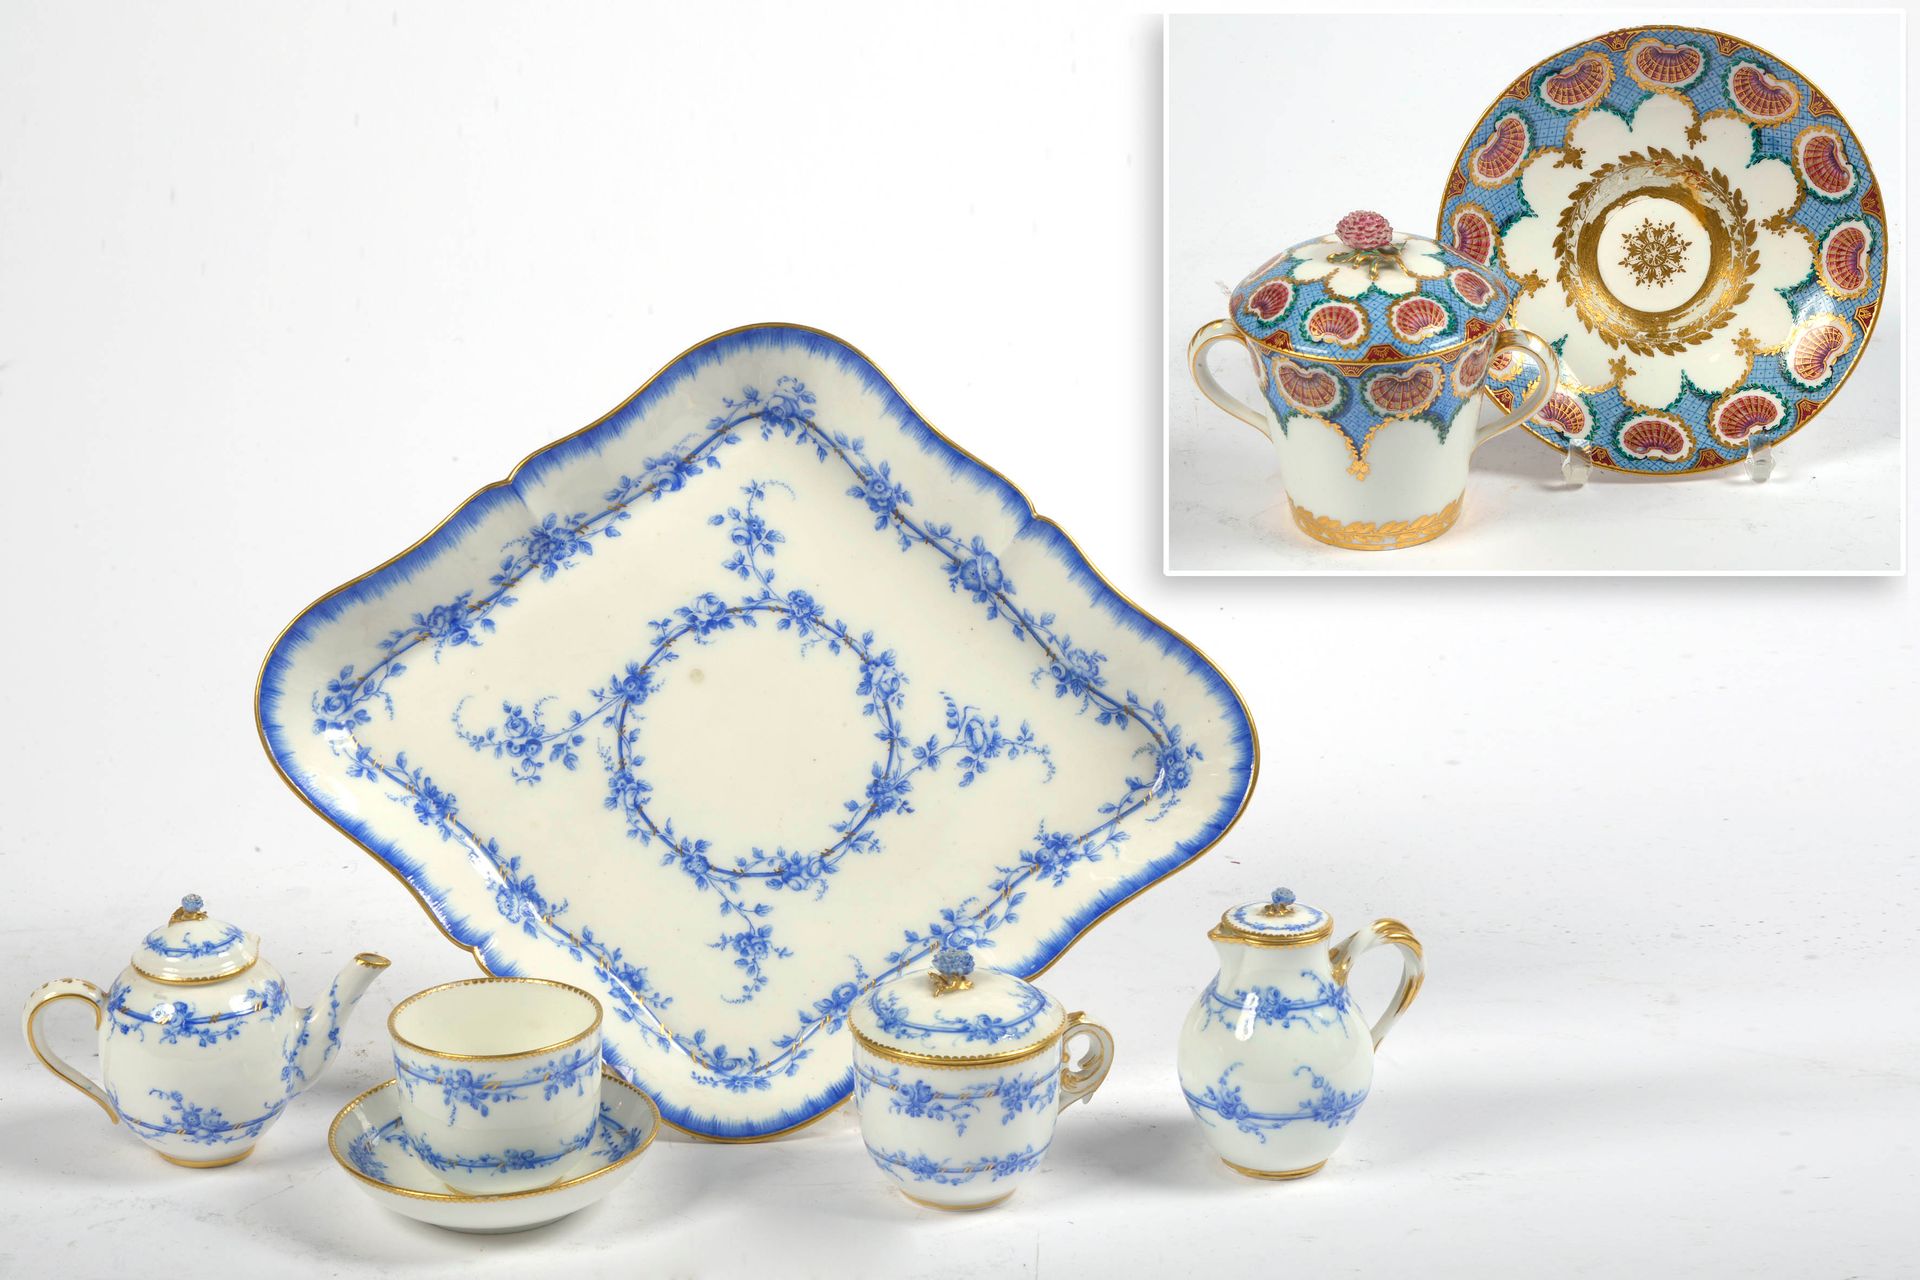 Null 套装包括：一个五件套的自助服务和它的托盘，蓝色和金色的瓷器，有花卉装饰。塞夫勒蓝色标记，日期为D - E和F，表示1756至1759年间。附有一个带有&hellip;